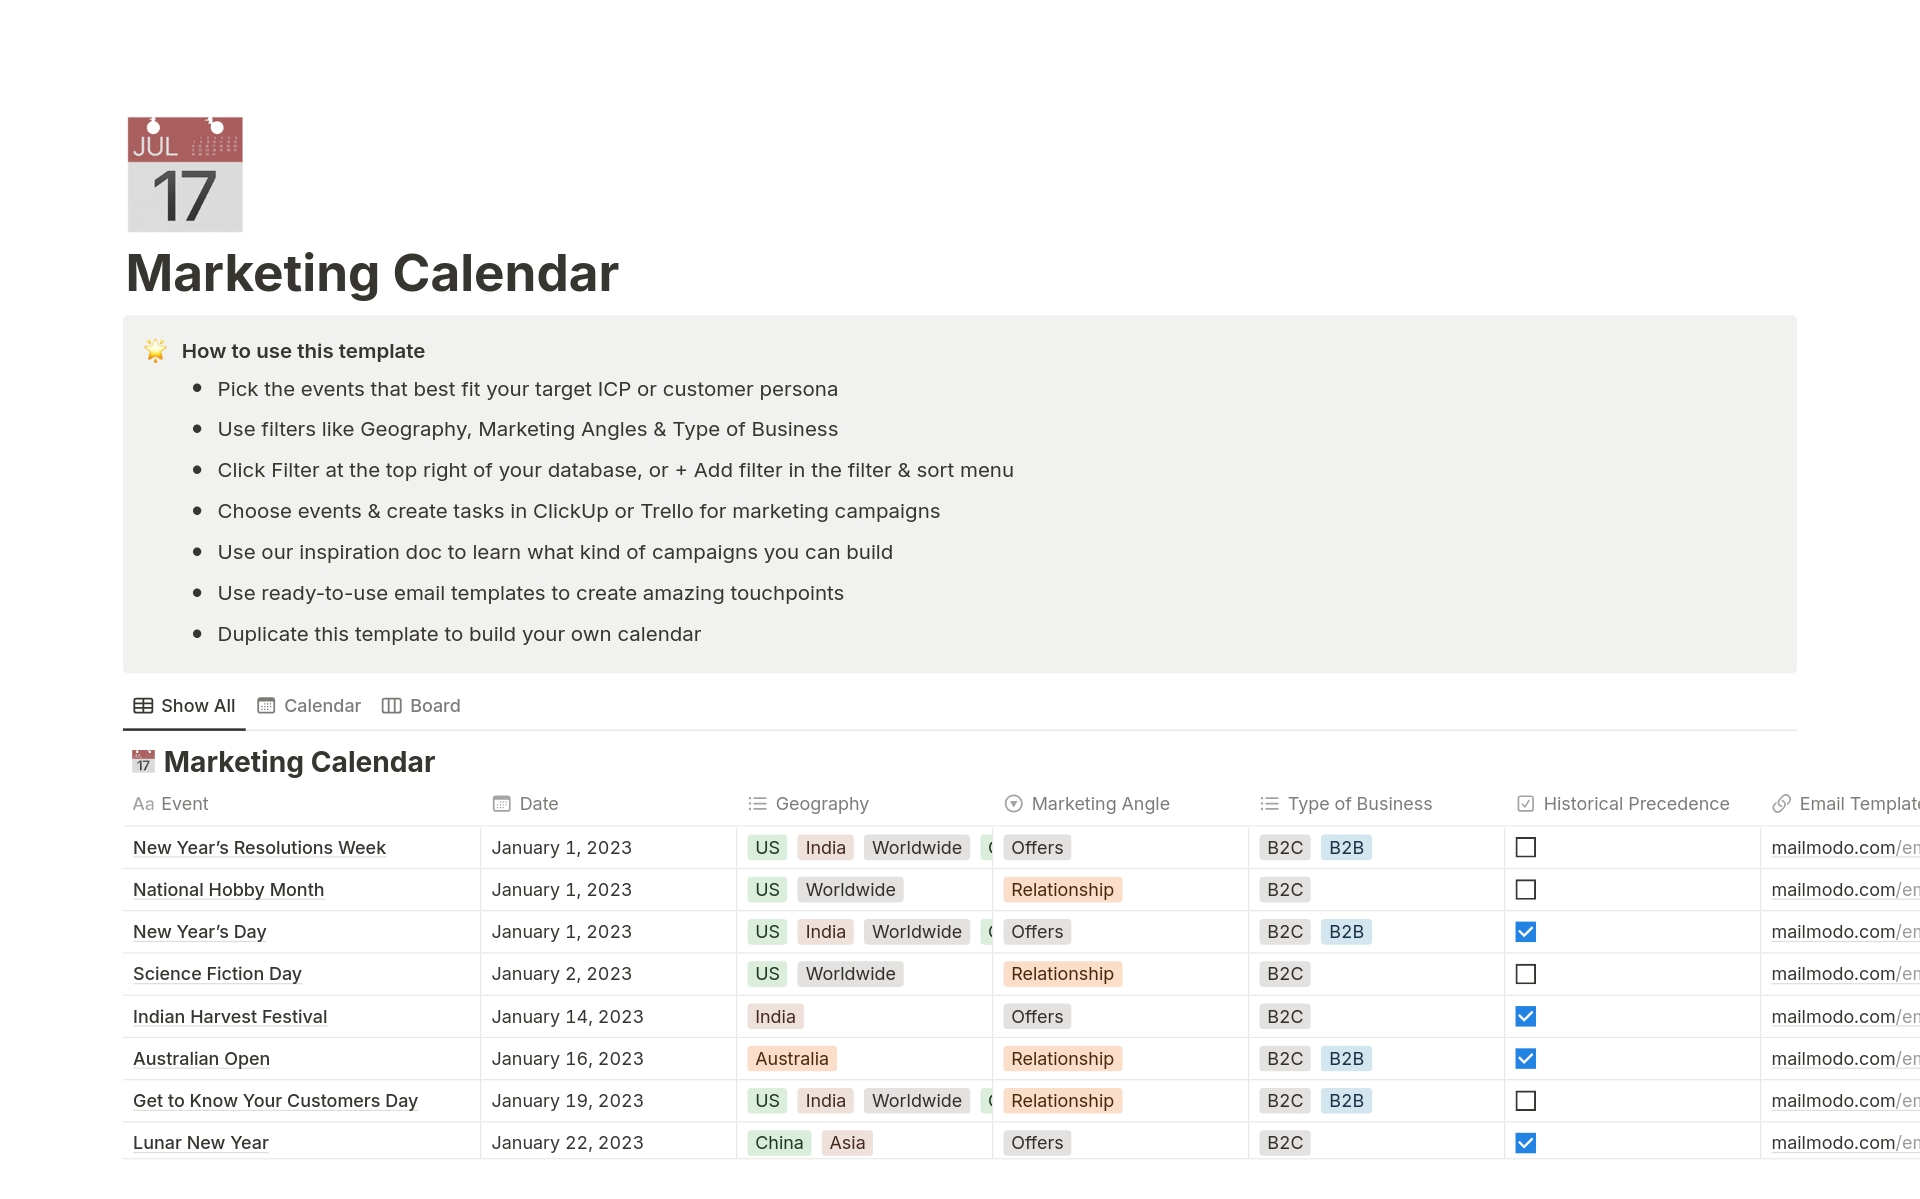 Vista previa de una plantilla para Mailmodo's Marketing Calendar